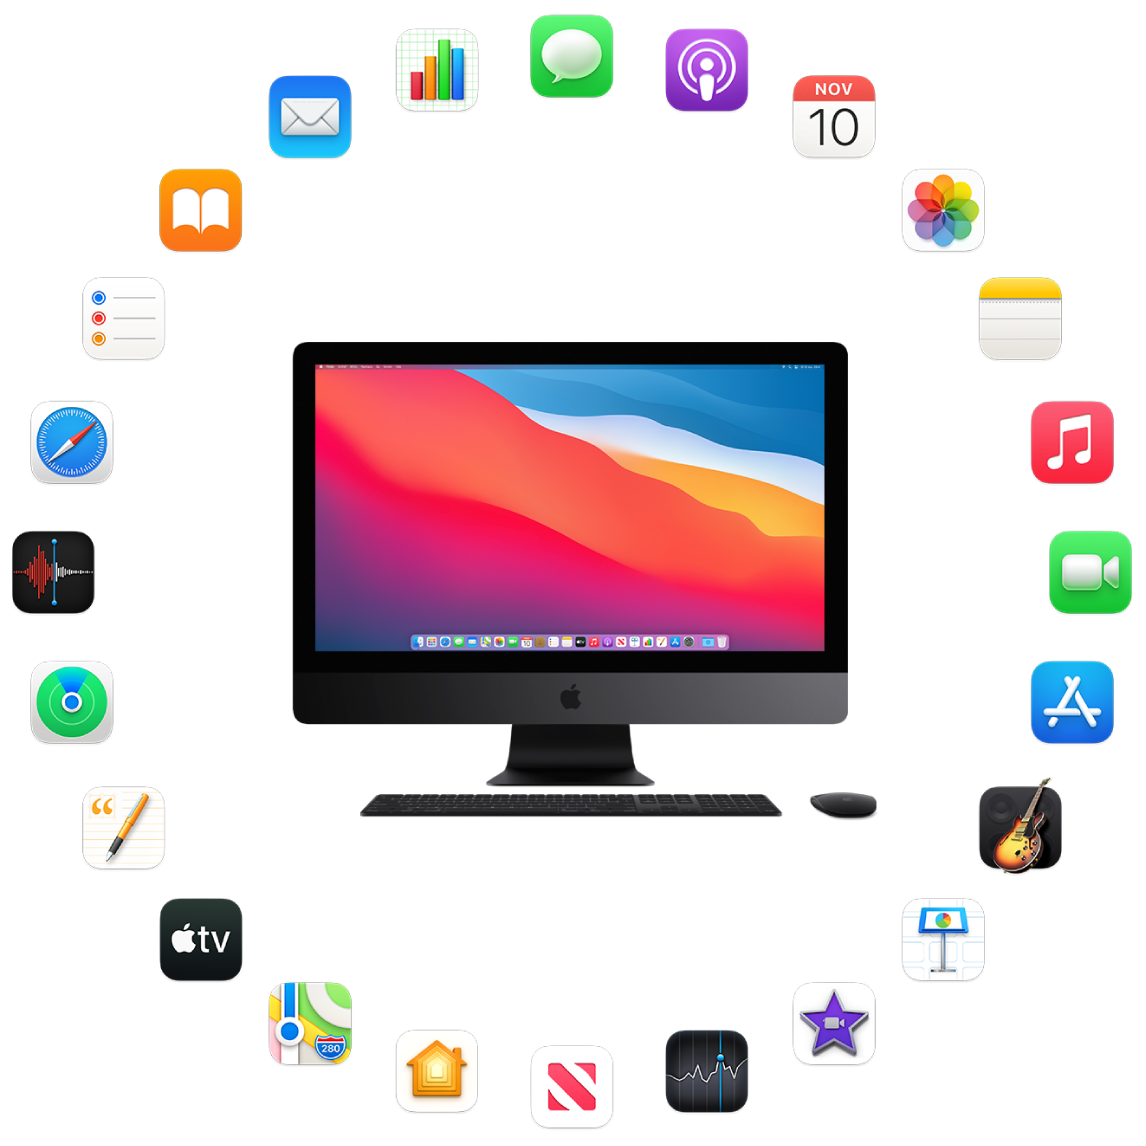 Een iMac Pro omringd door de symbolen voor de apps die standaard worden meegeleverd en die hierna worden beschreven.